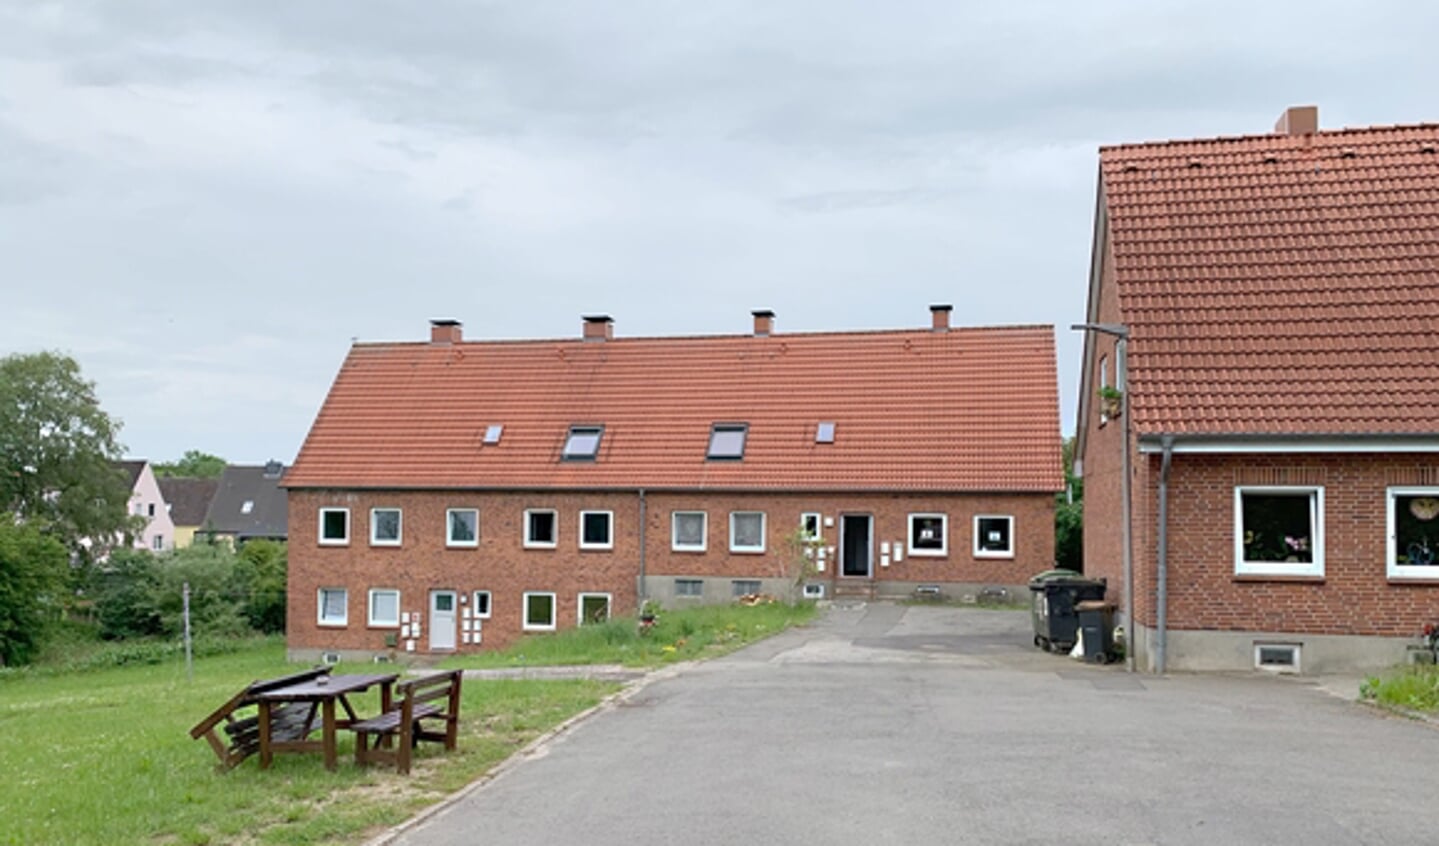 Det sociale boligbyggeri til hjemløse på Ansgarweg i Slesvig bliver ikke en skrabet model. Byggeudvalget vil nemlig bygge et nyt hjem til de hjemløse og renovere det gamle.